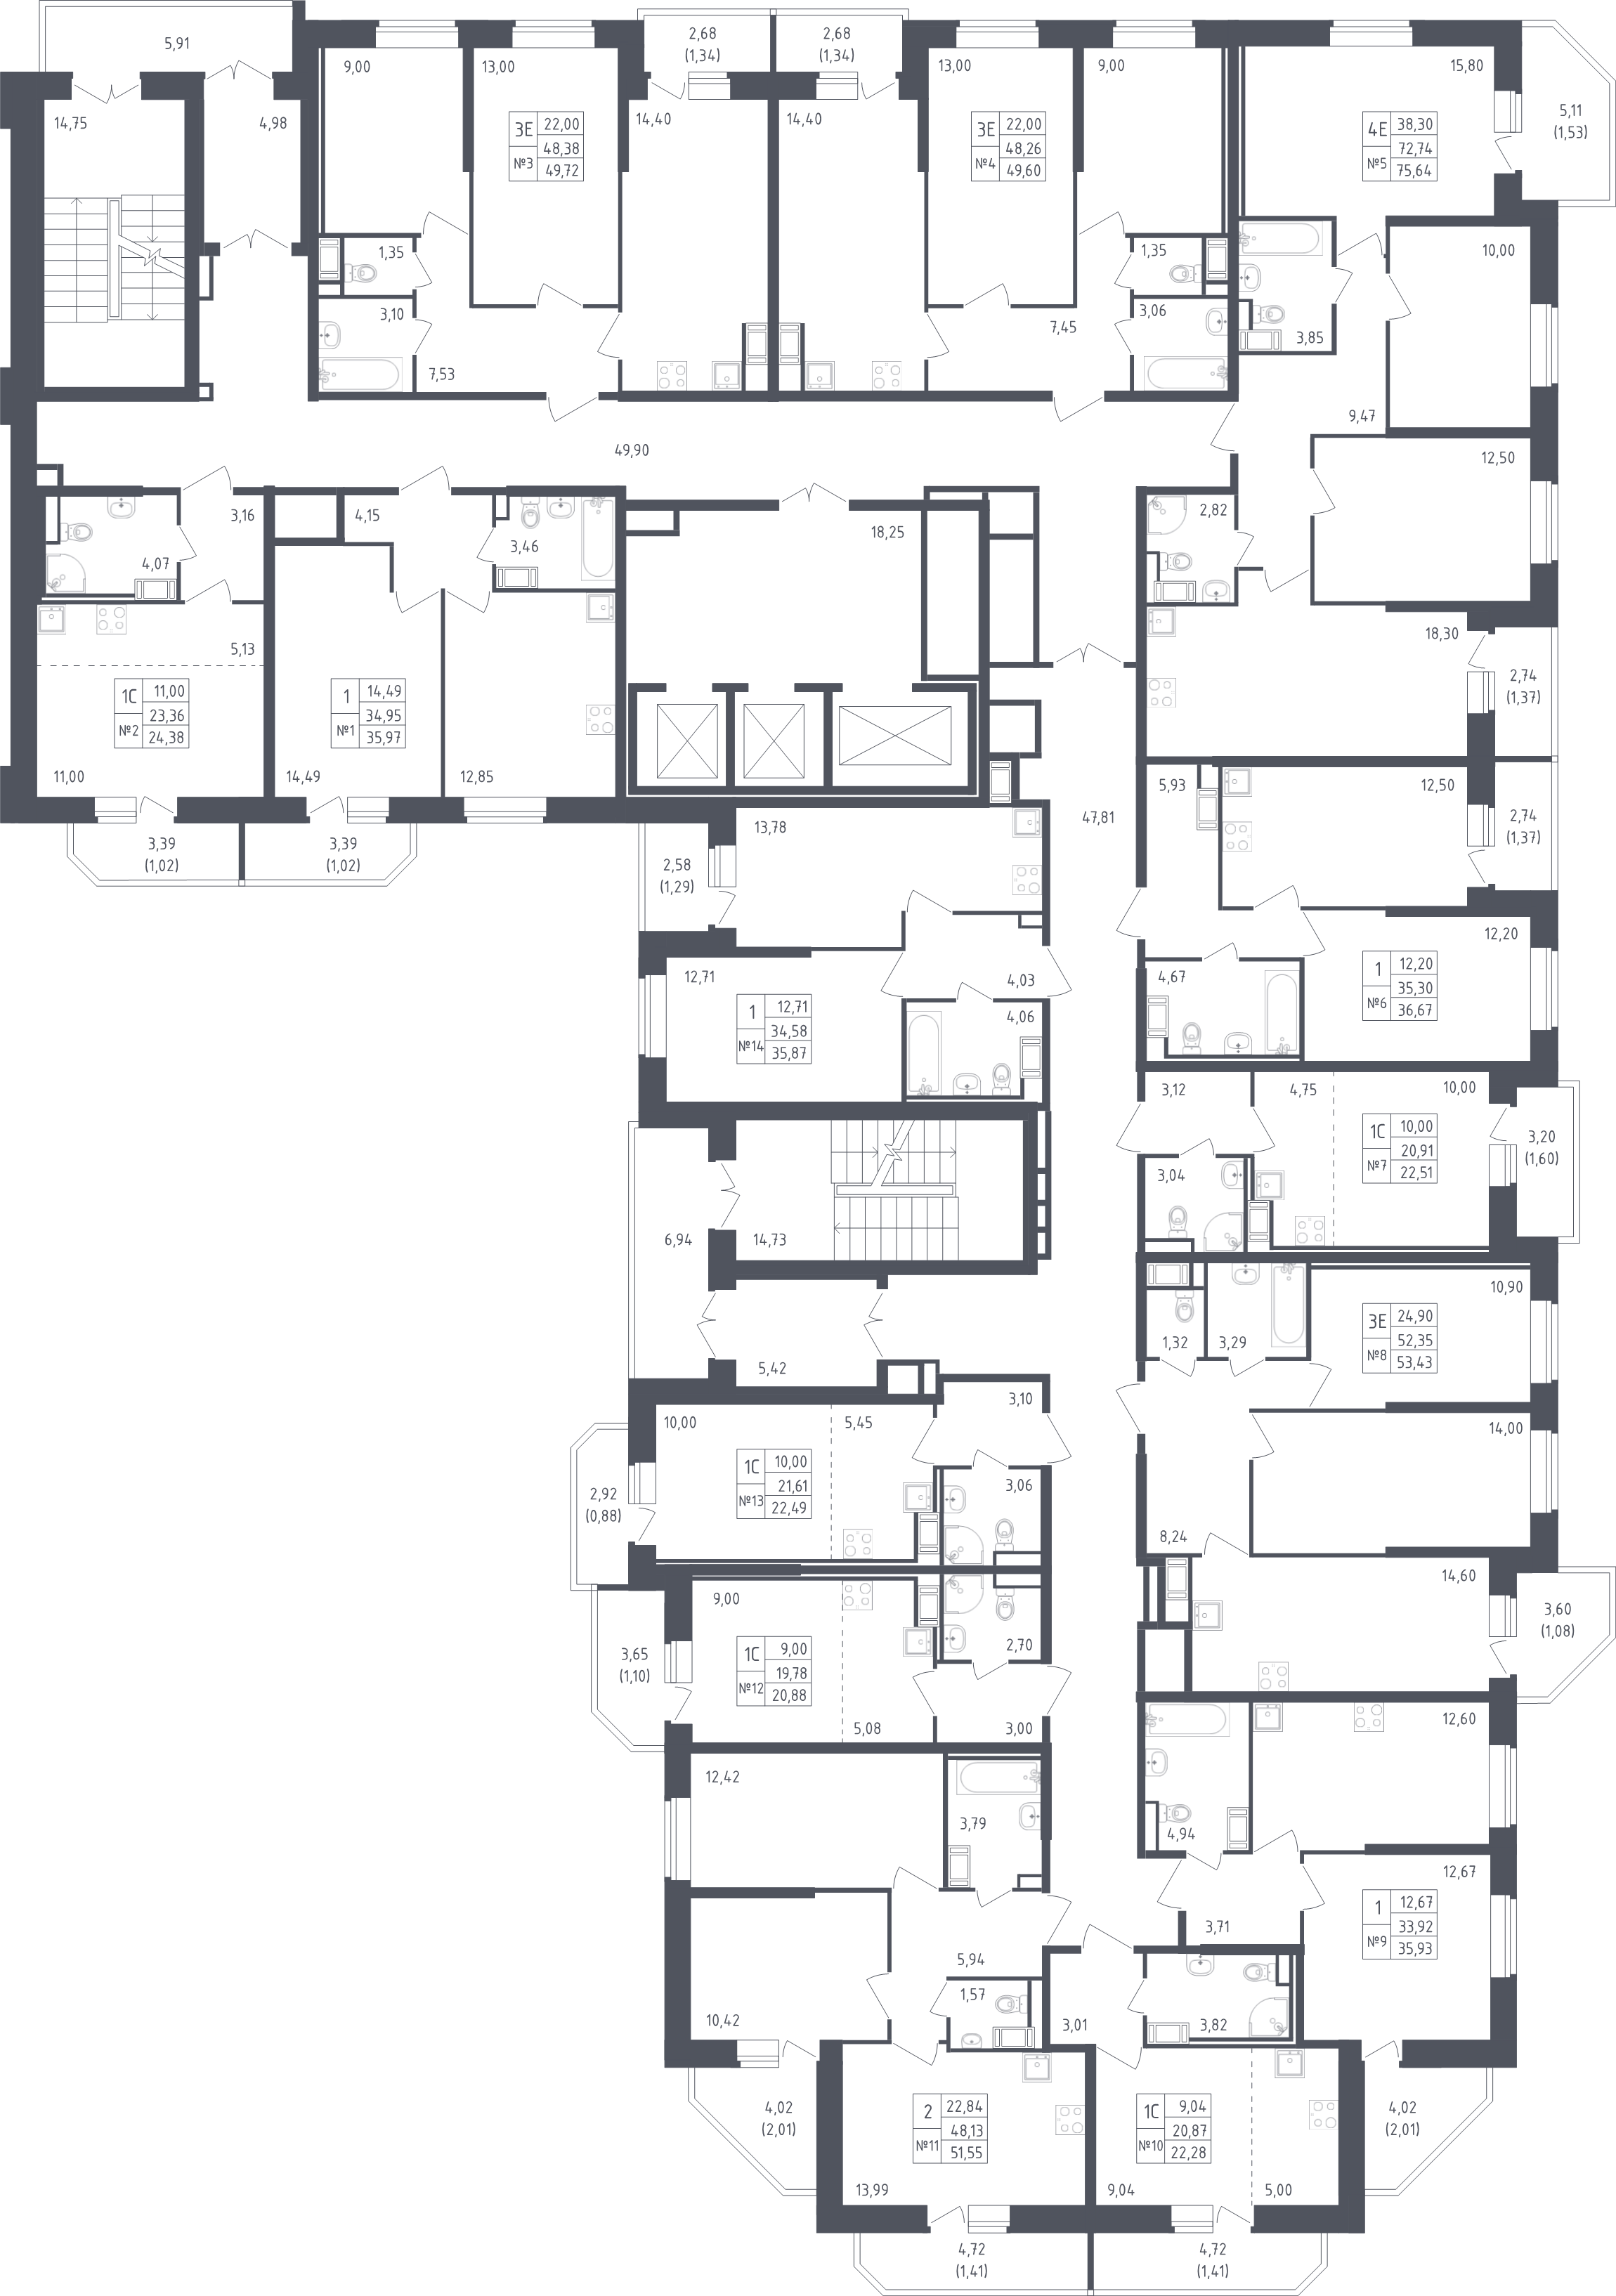 1-комнатная квартира, 35.93 м² - планировка этажа